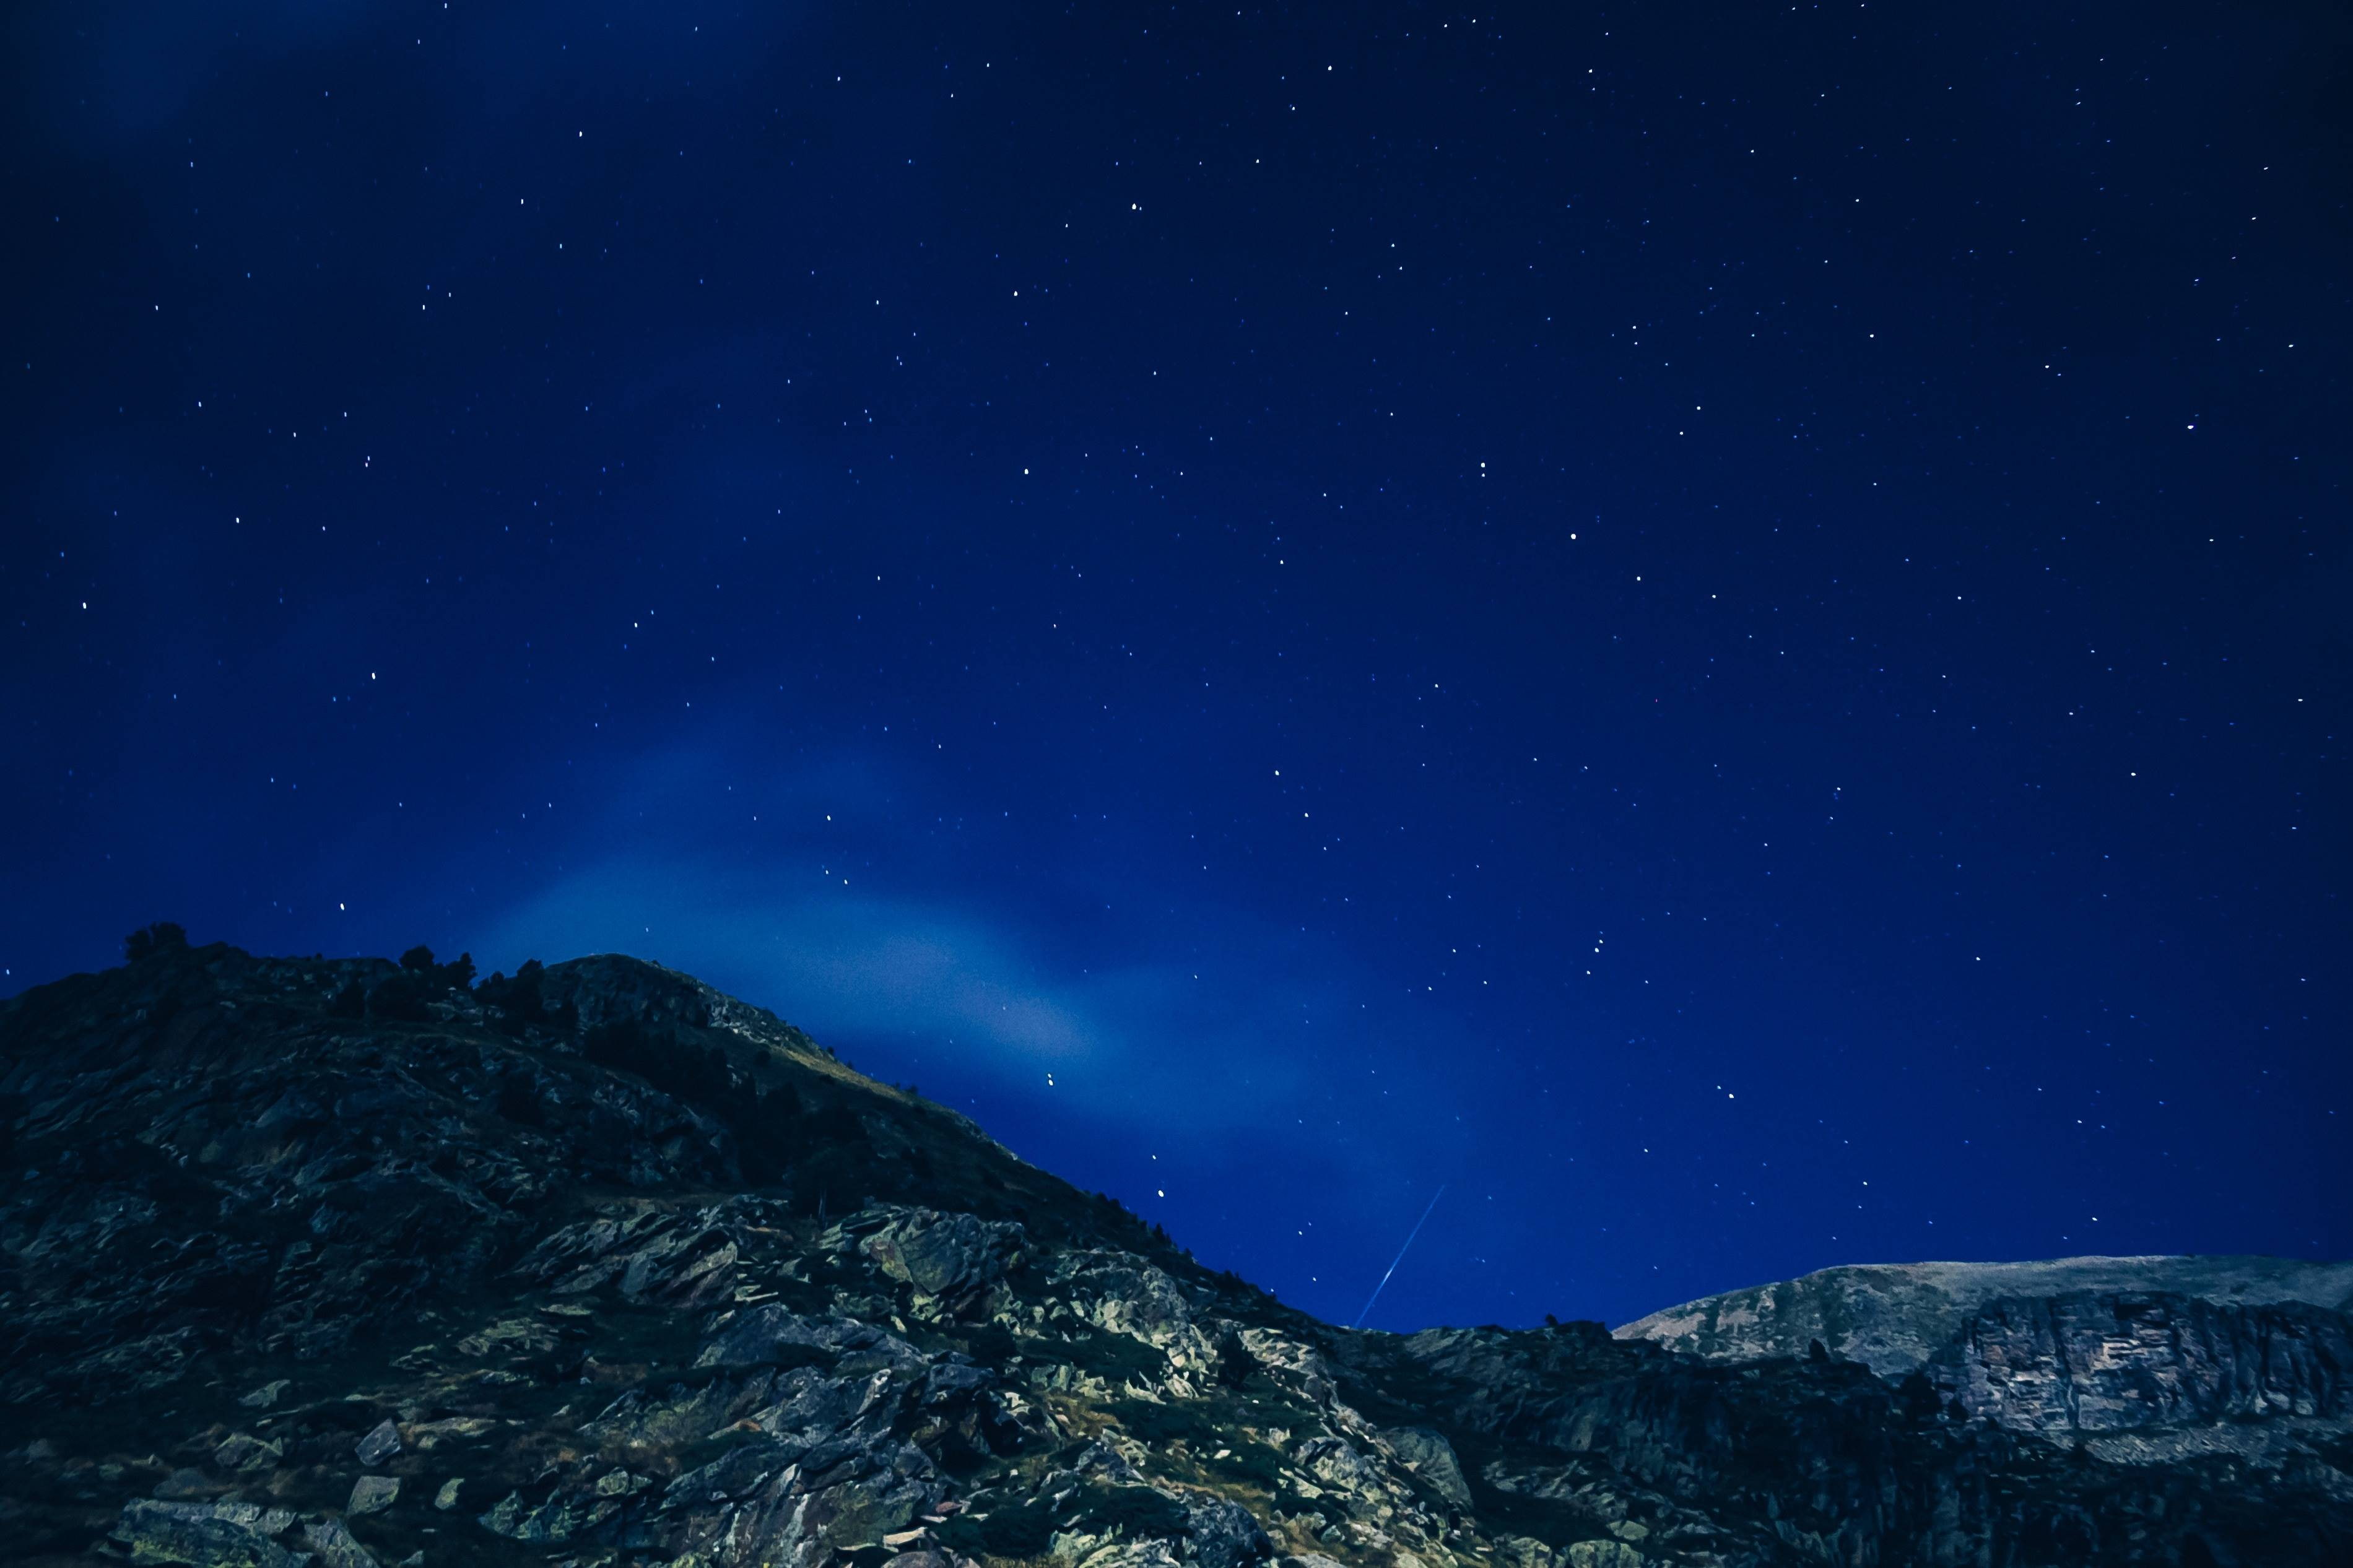 Обои ночное небо атмосфера ночь - бесплатные картинки на Fonwall